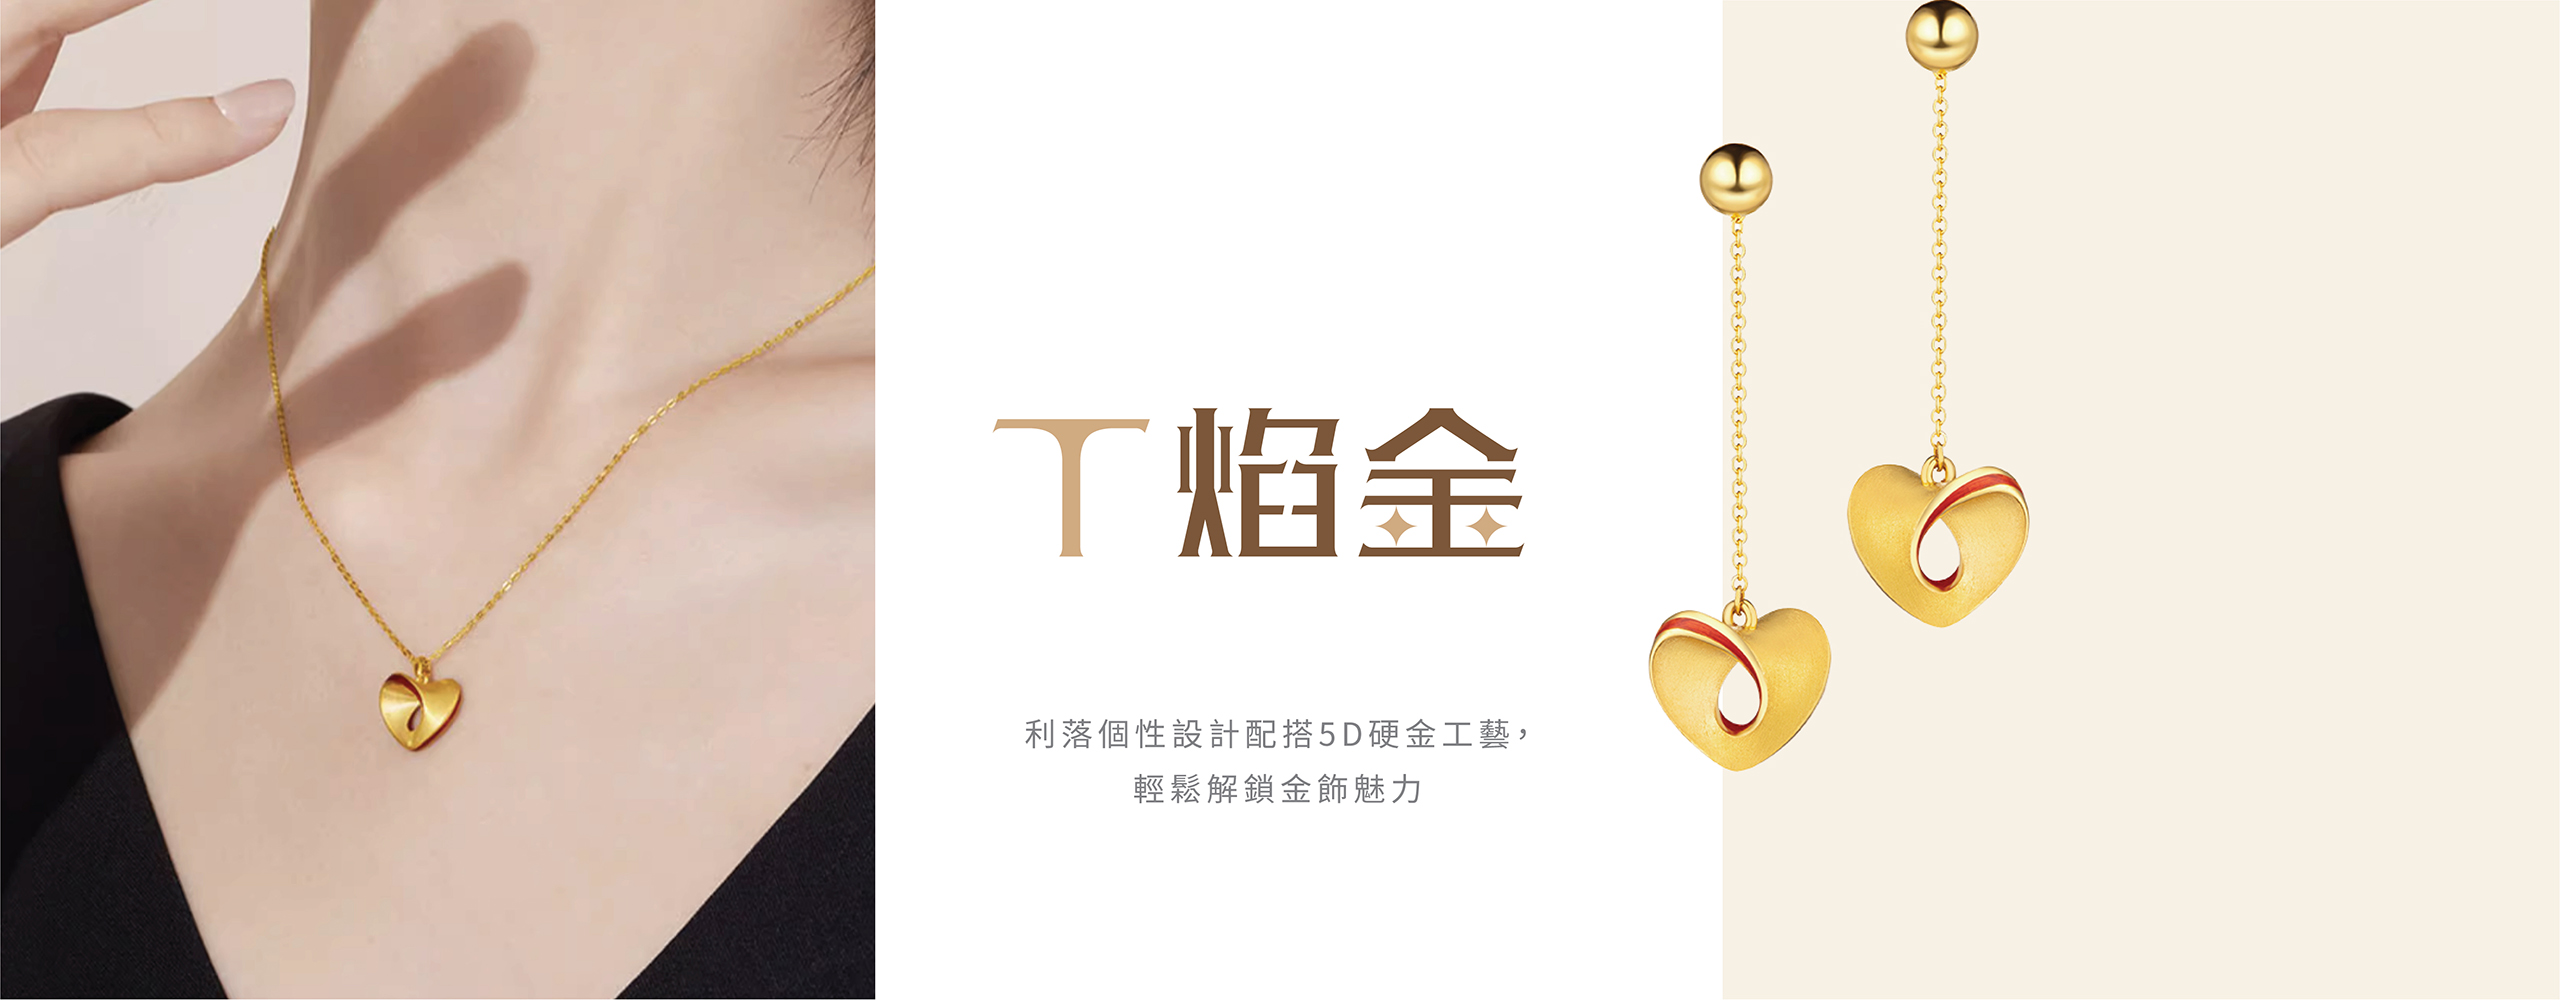 六福珠寶 - Timentional Gold  | T焰金系列  Banner